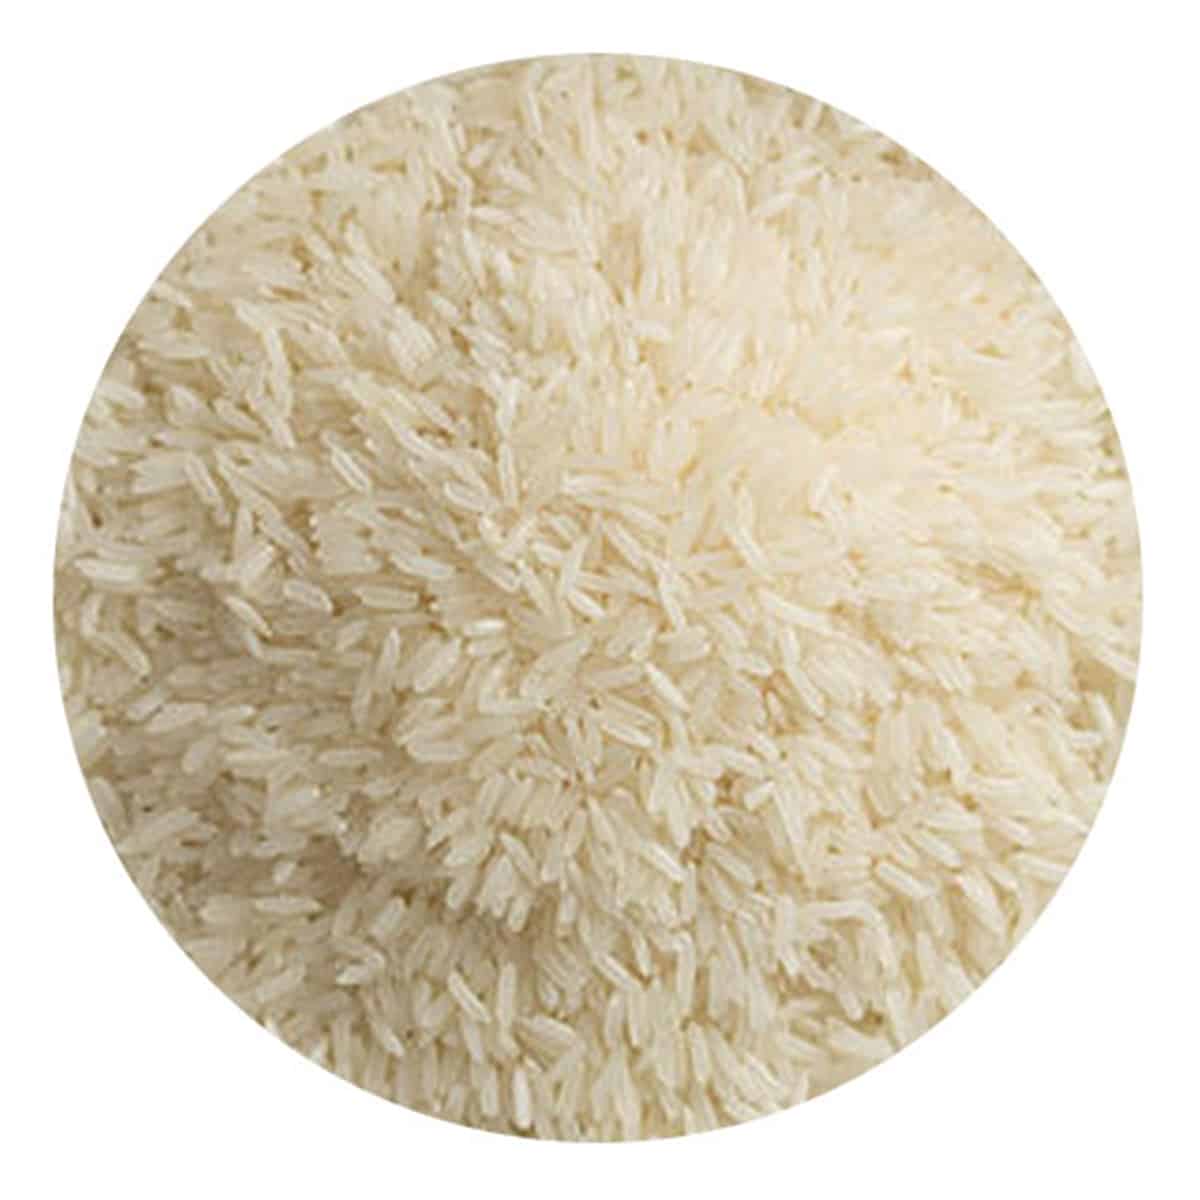 Buy IAG Foods Jasmine Rice - 1 kg